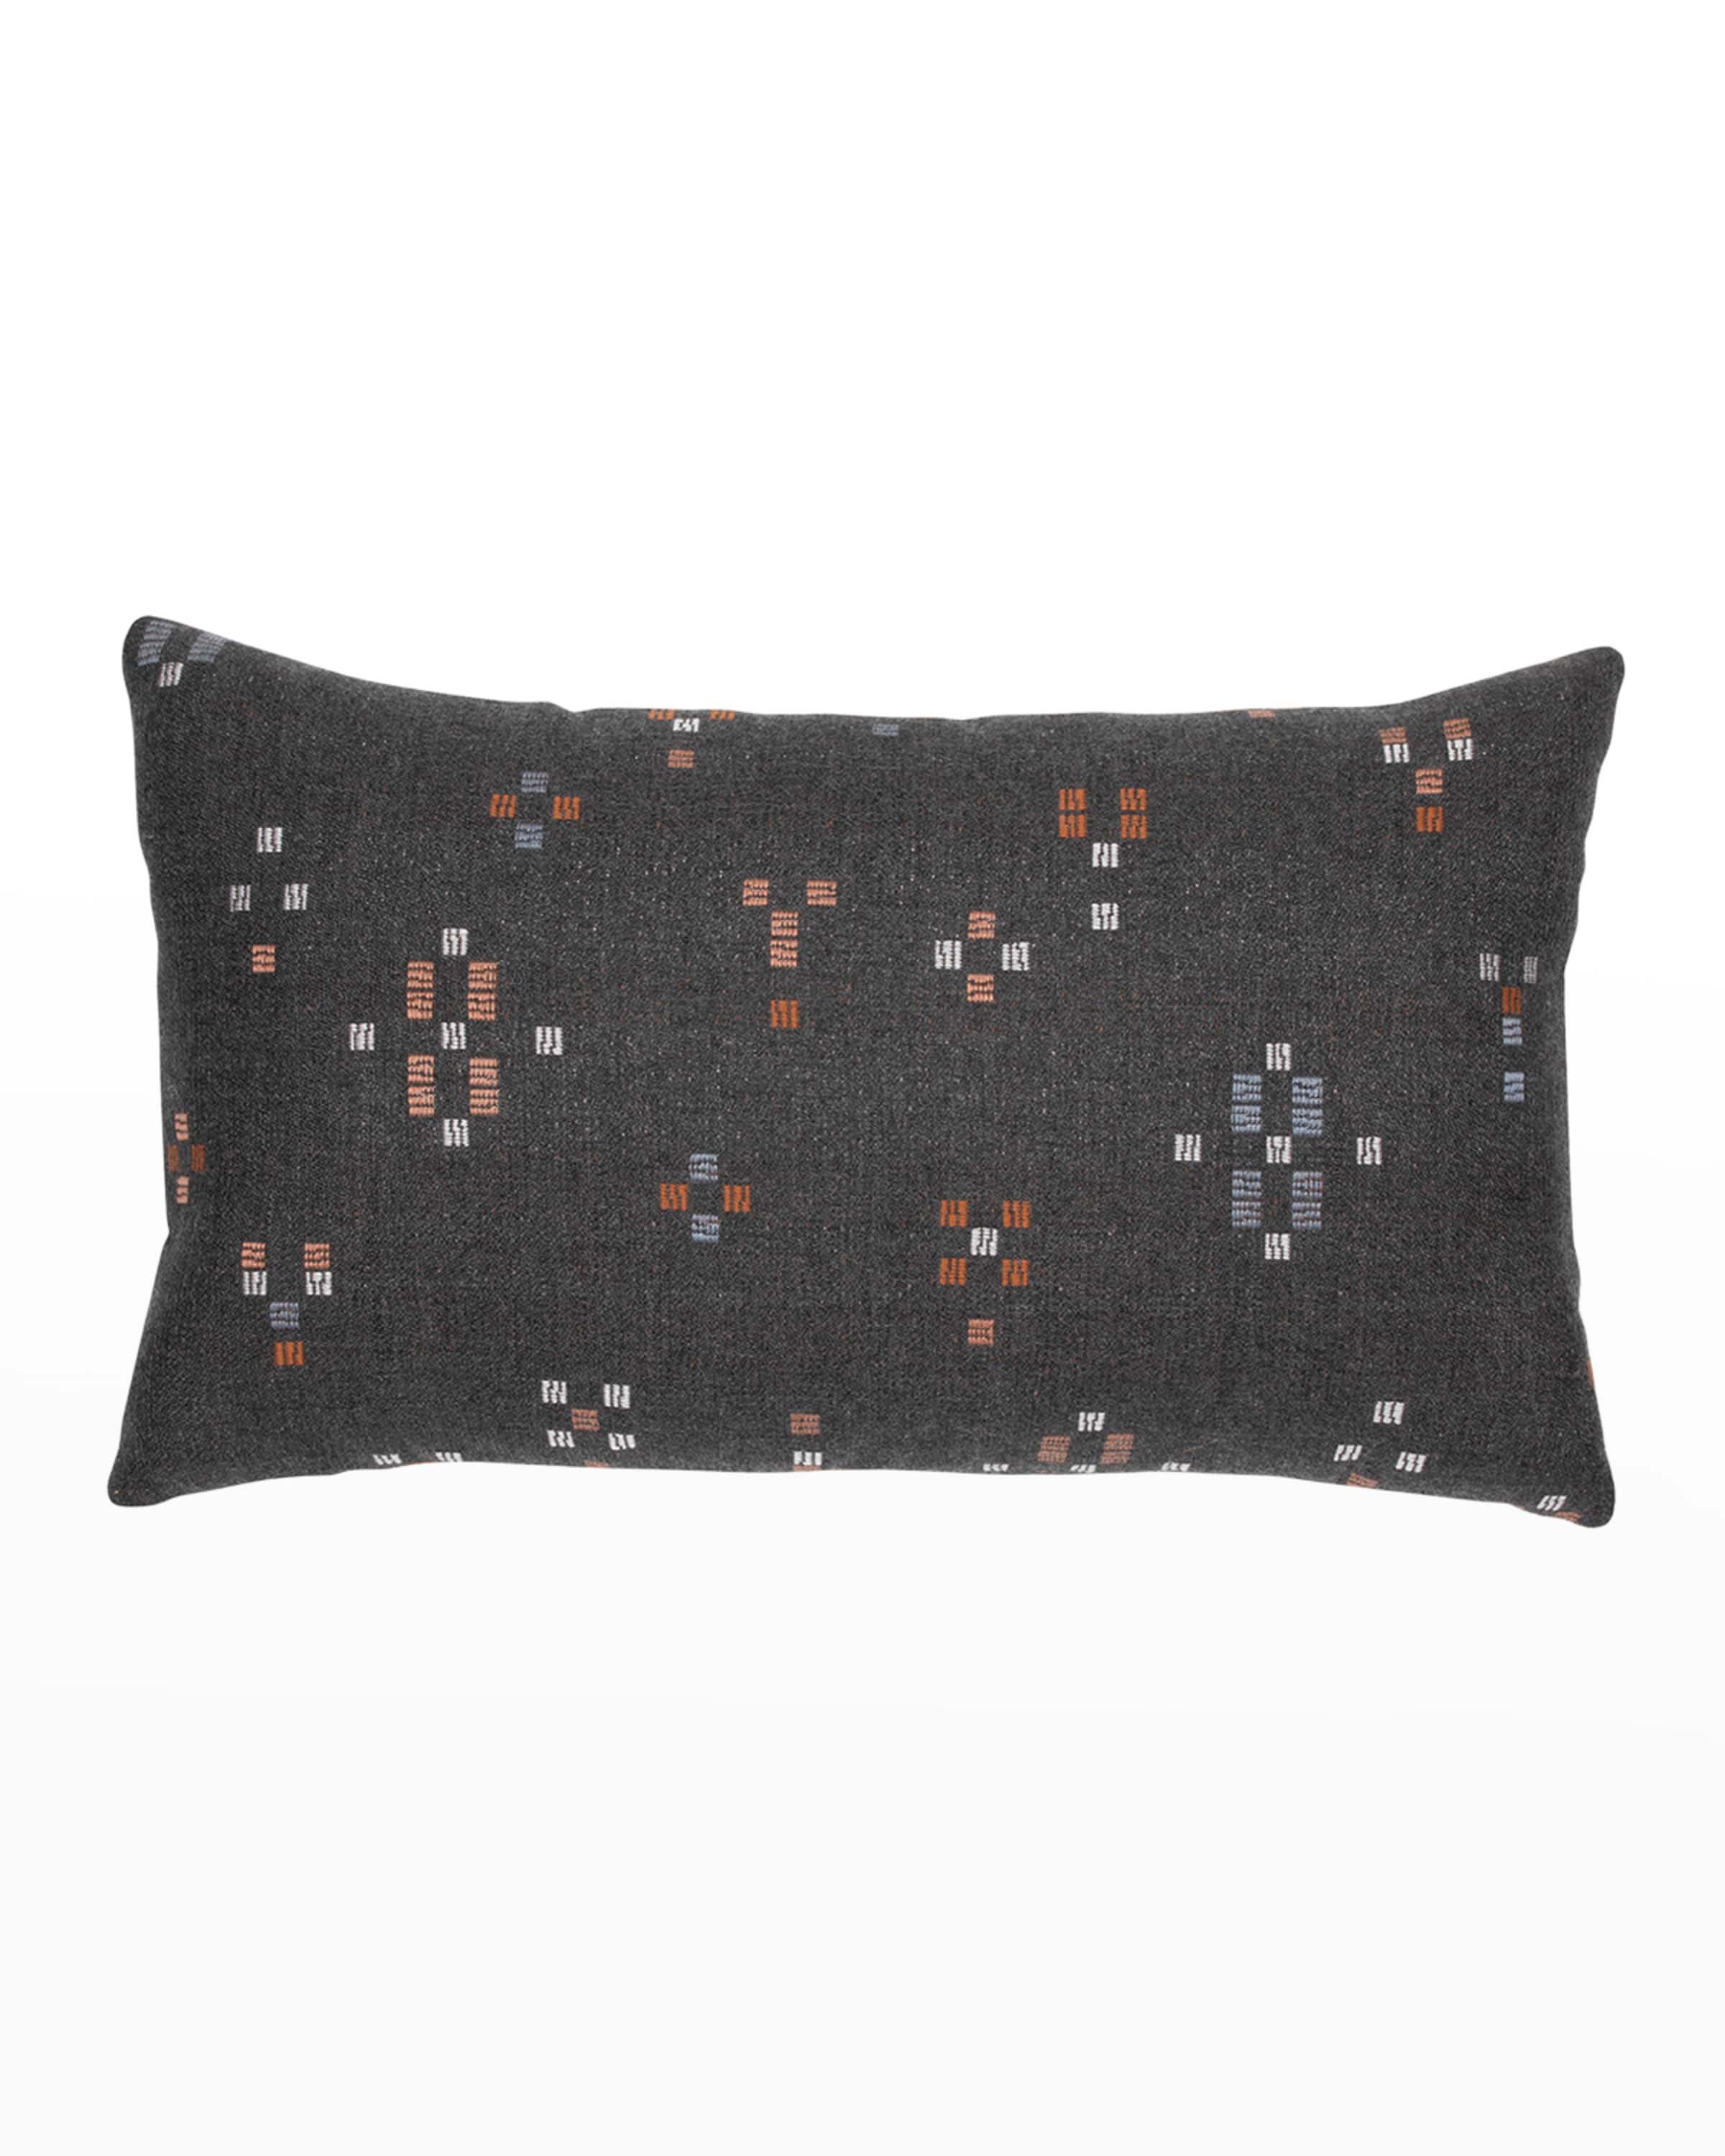 Outdoor Lumbar Throw Pillows, (12 x 20)